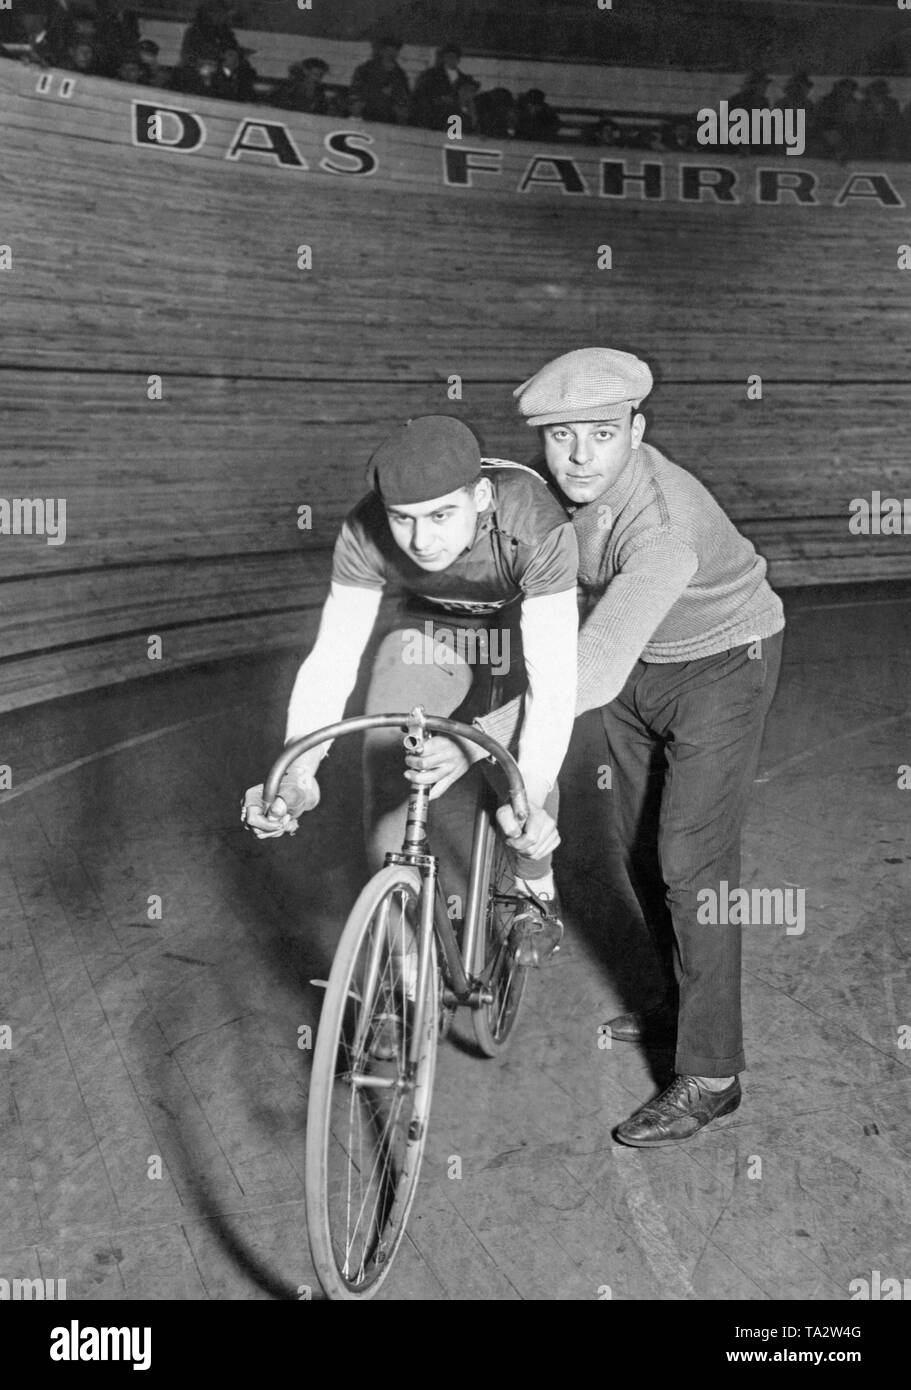 Une piste cycliste et son adjoint qui prend en charge lui, posant pour une photo en face de la piste cyclable dans le Berlin Sportpalast avant le début de la période de six jours de course. Banque D'Images